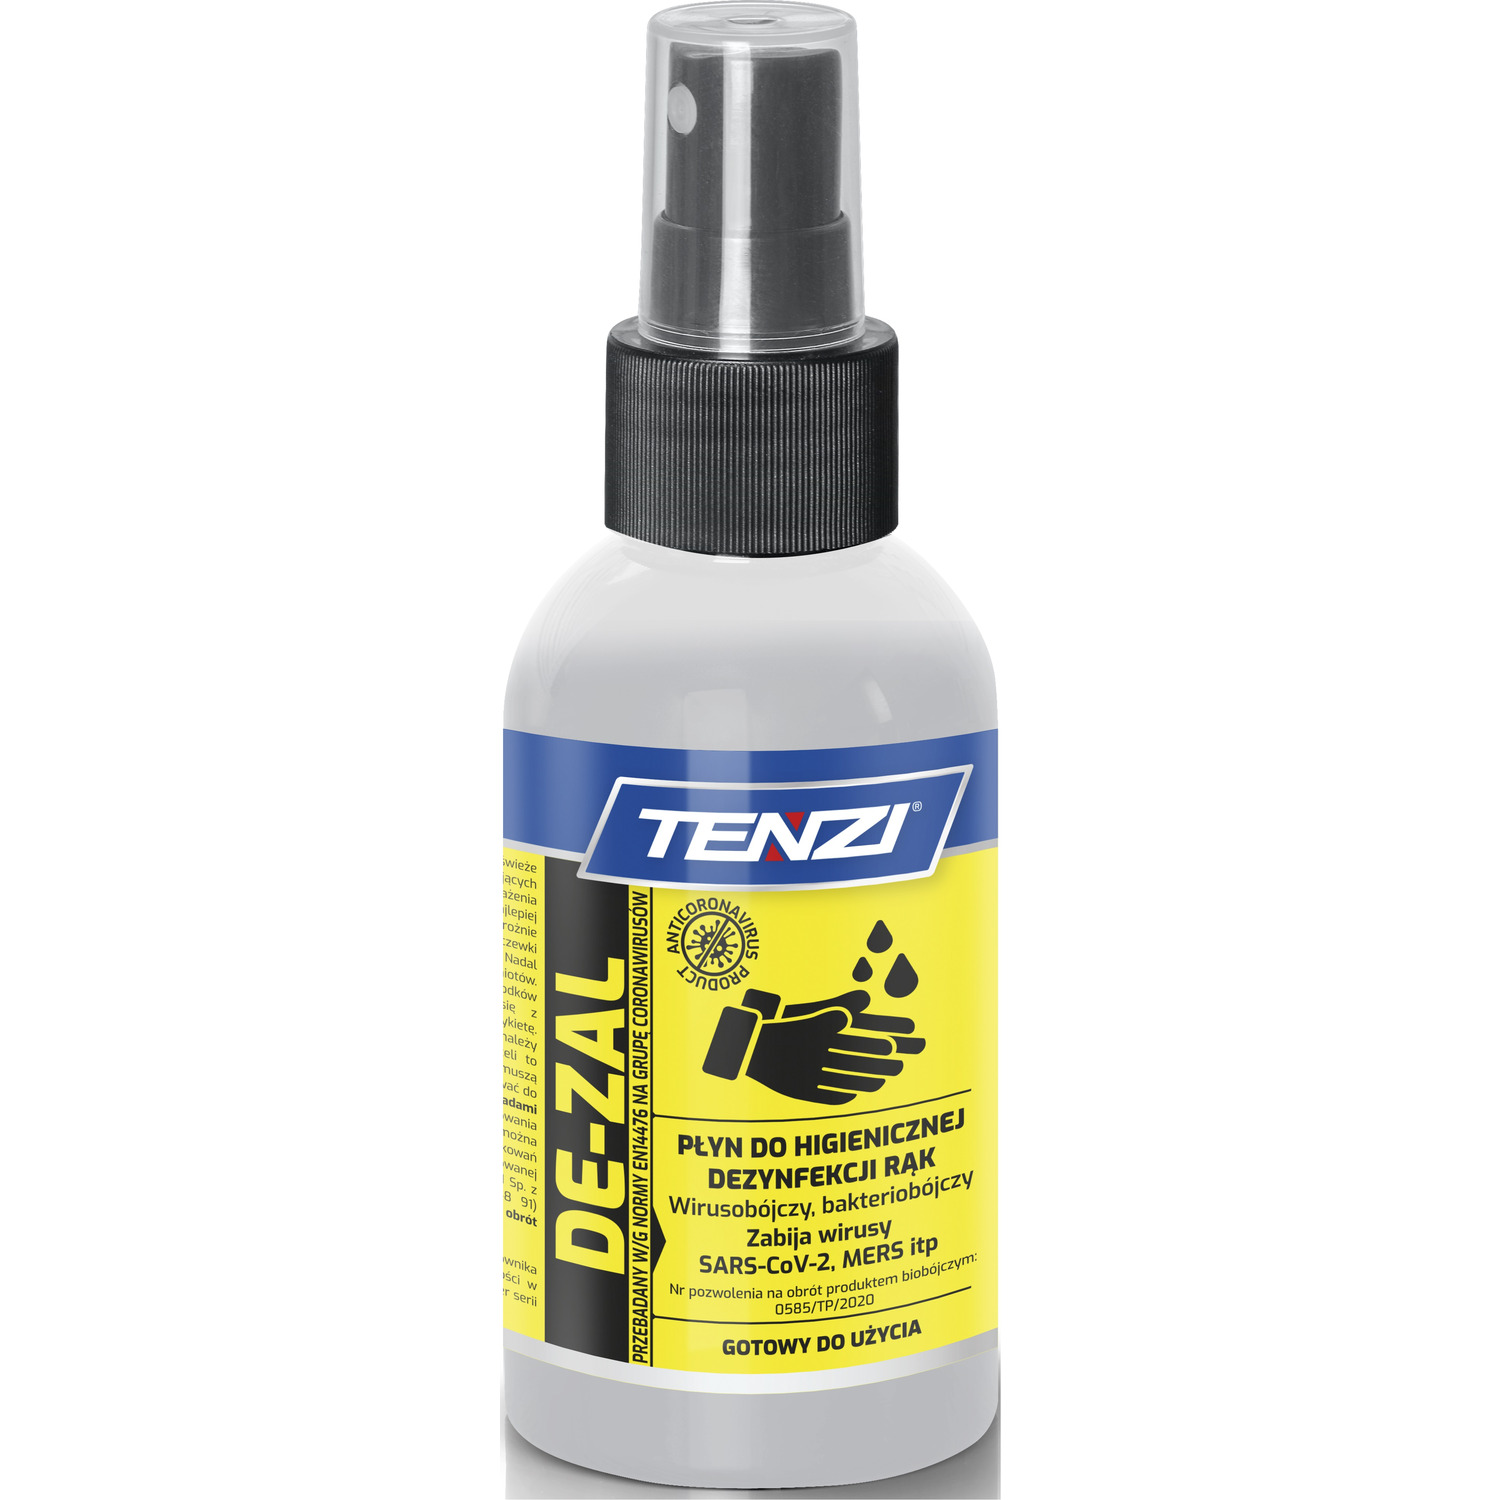 Płyn TENZI DE-ZAL do higienicznej dezynfekcji rąk 0,1l. (SP-22/0001), hp 3030180